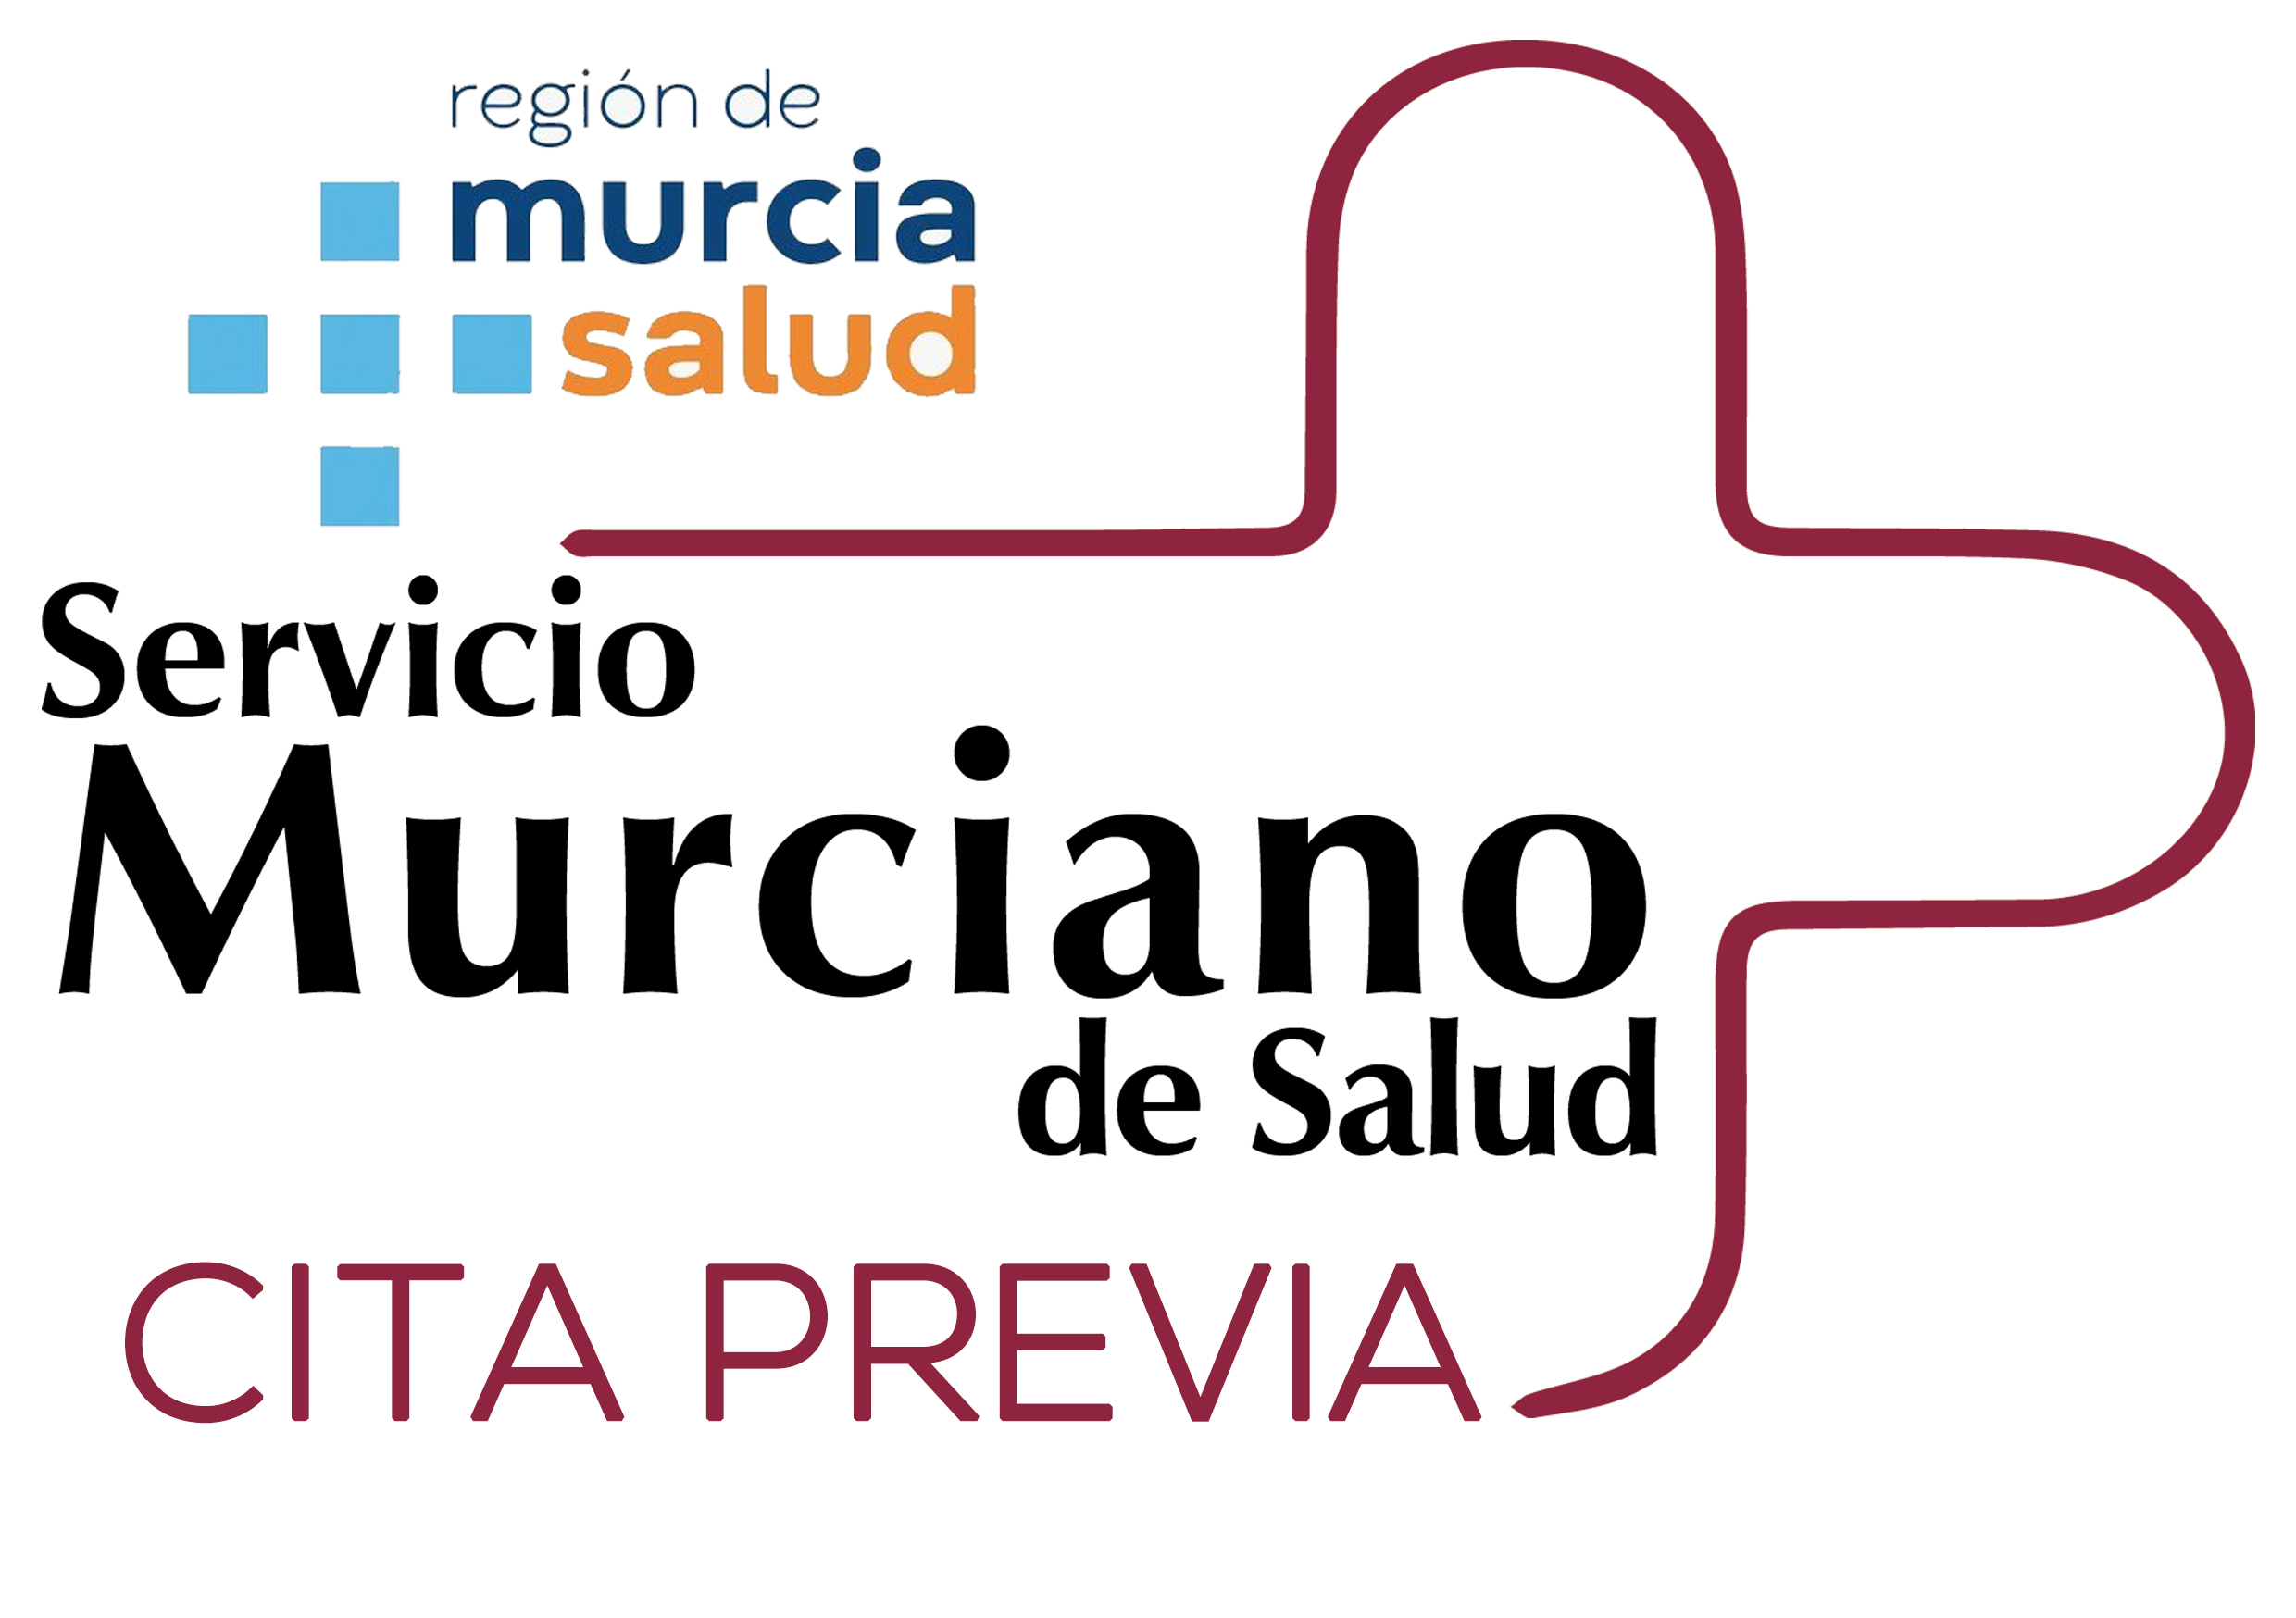 Servicio Murciano de Salud . Sale del sitio www.librilla.es  